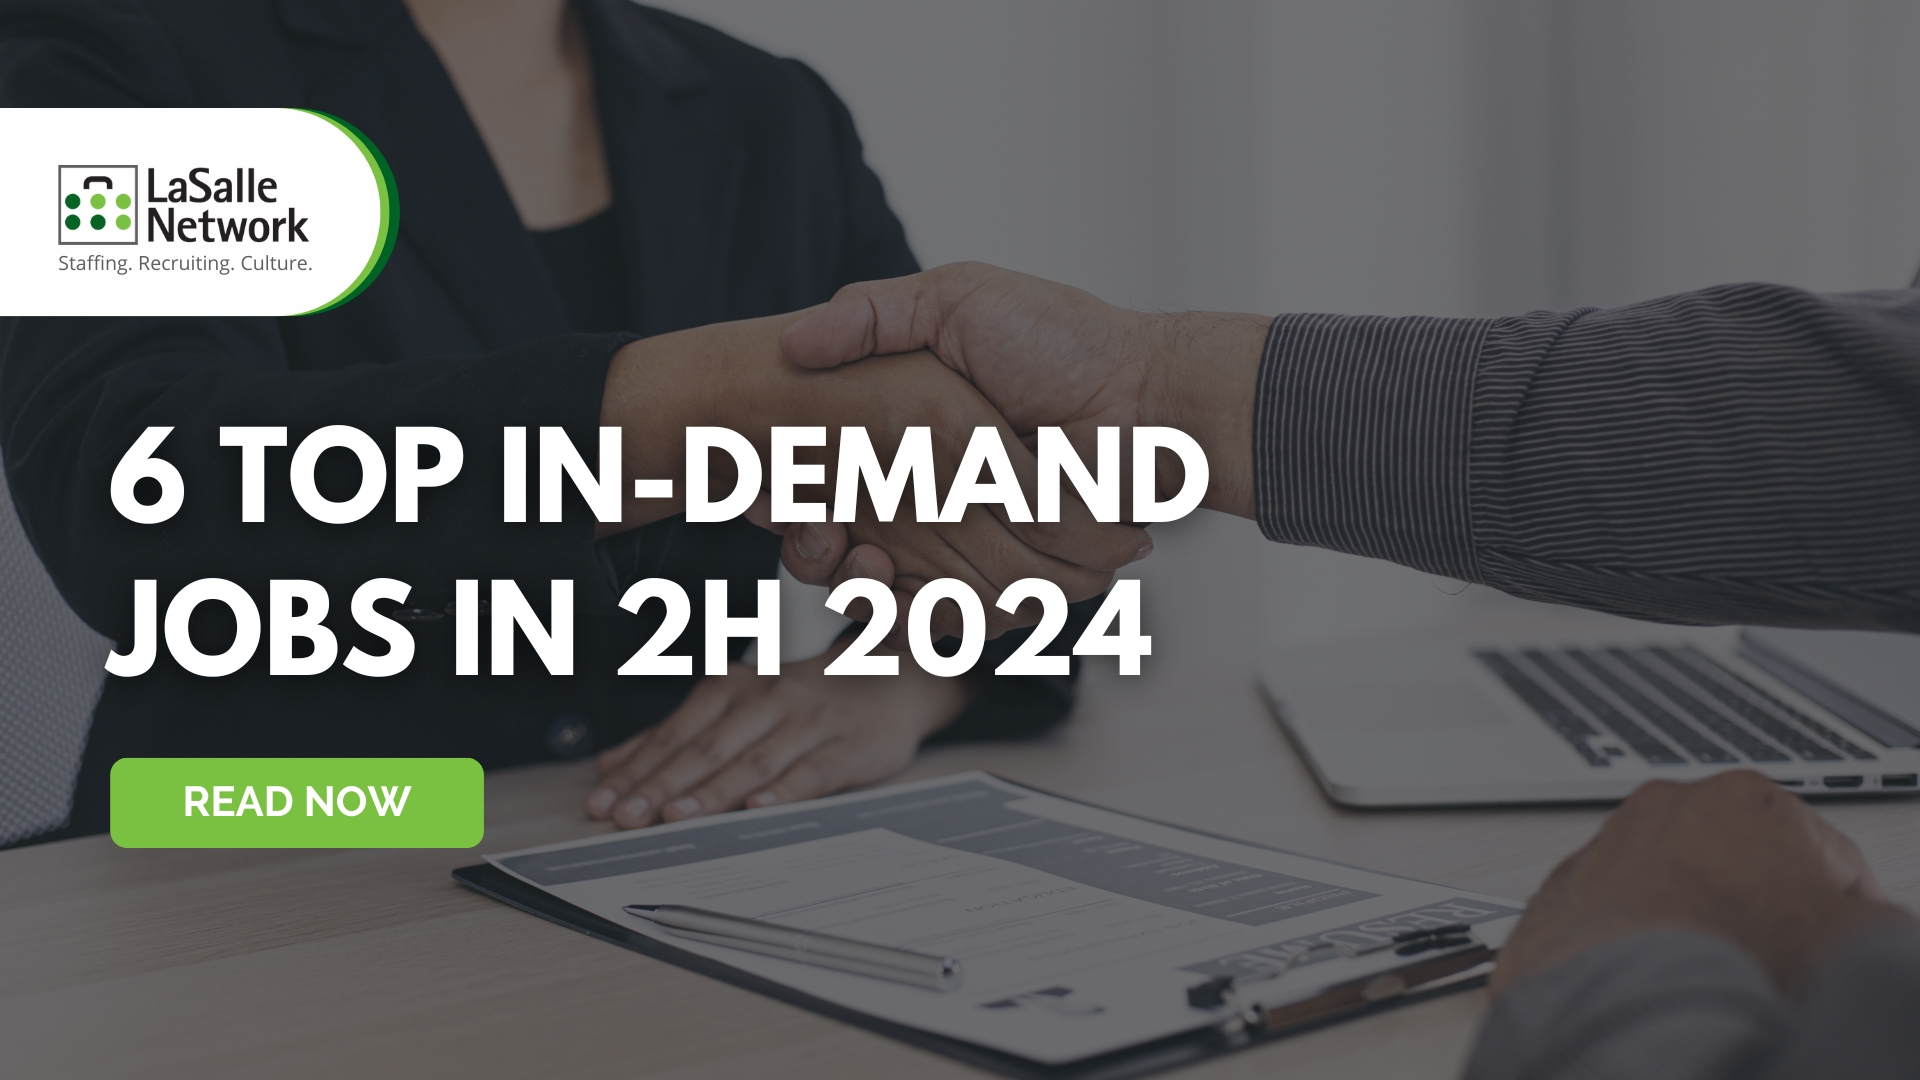 6 Top In-Demand Jobs in 2H 2024